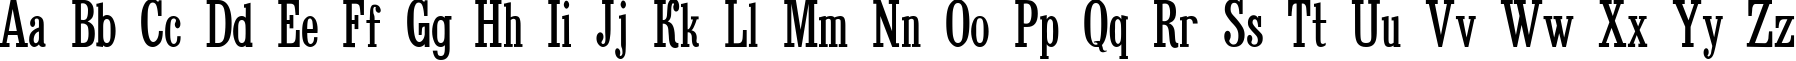 Пример написания английского алфавита шрифтом Bruskovaya Comp Plain